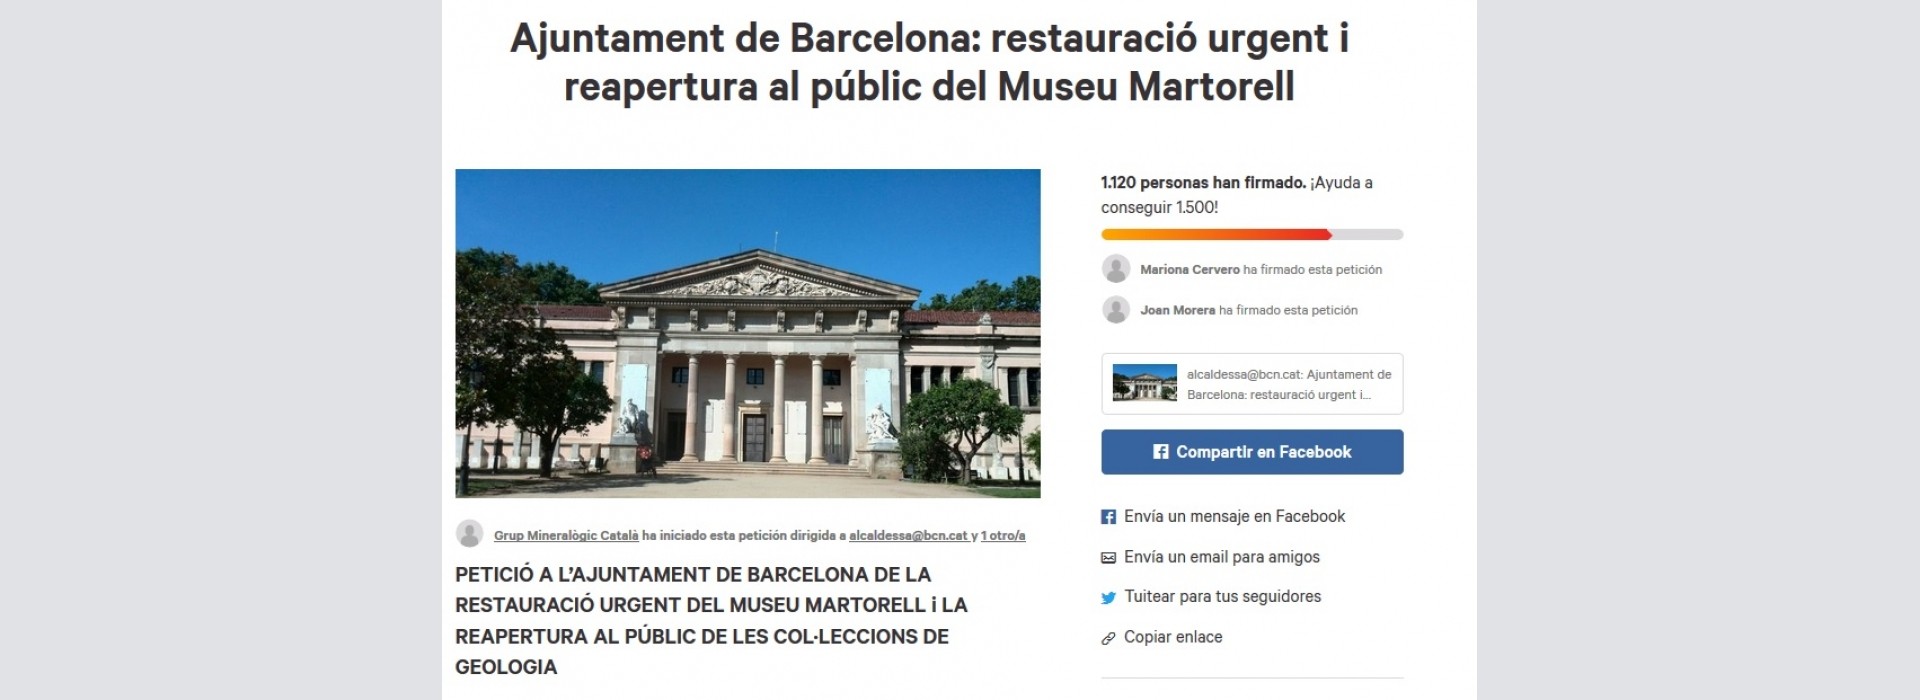 Necesitamos firmas! Ajuntament de Barcelona: restauración urgente y reapertura al público del Museu Martorell